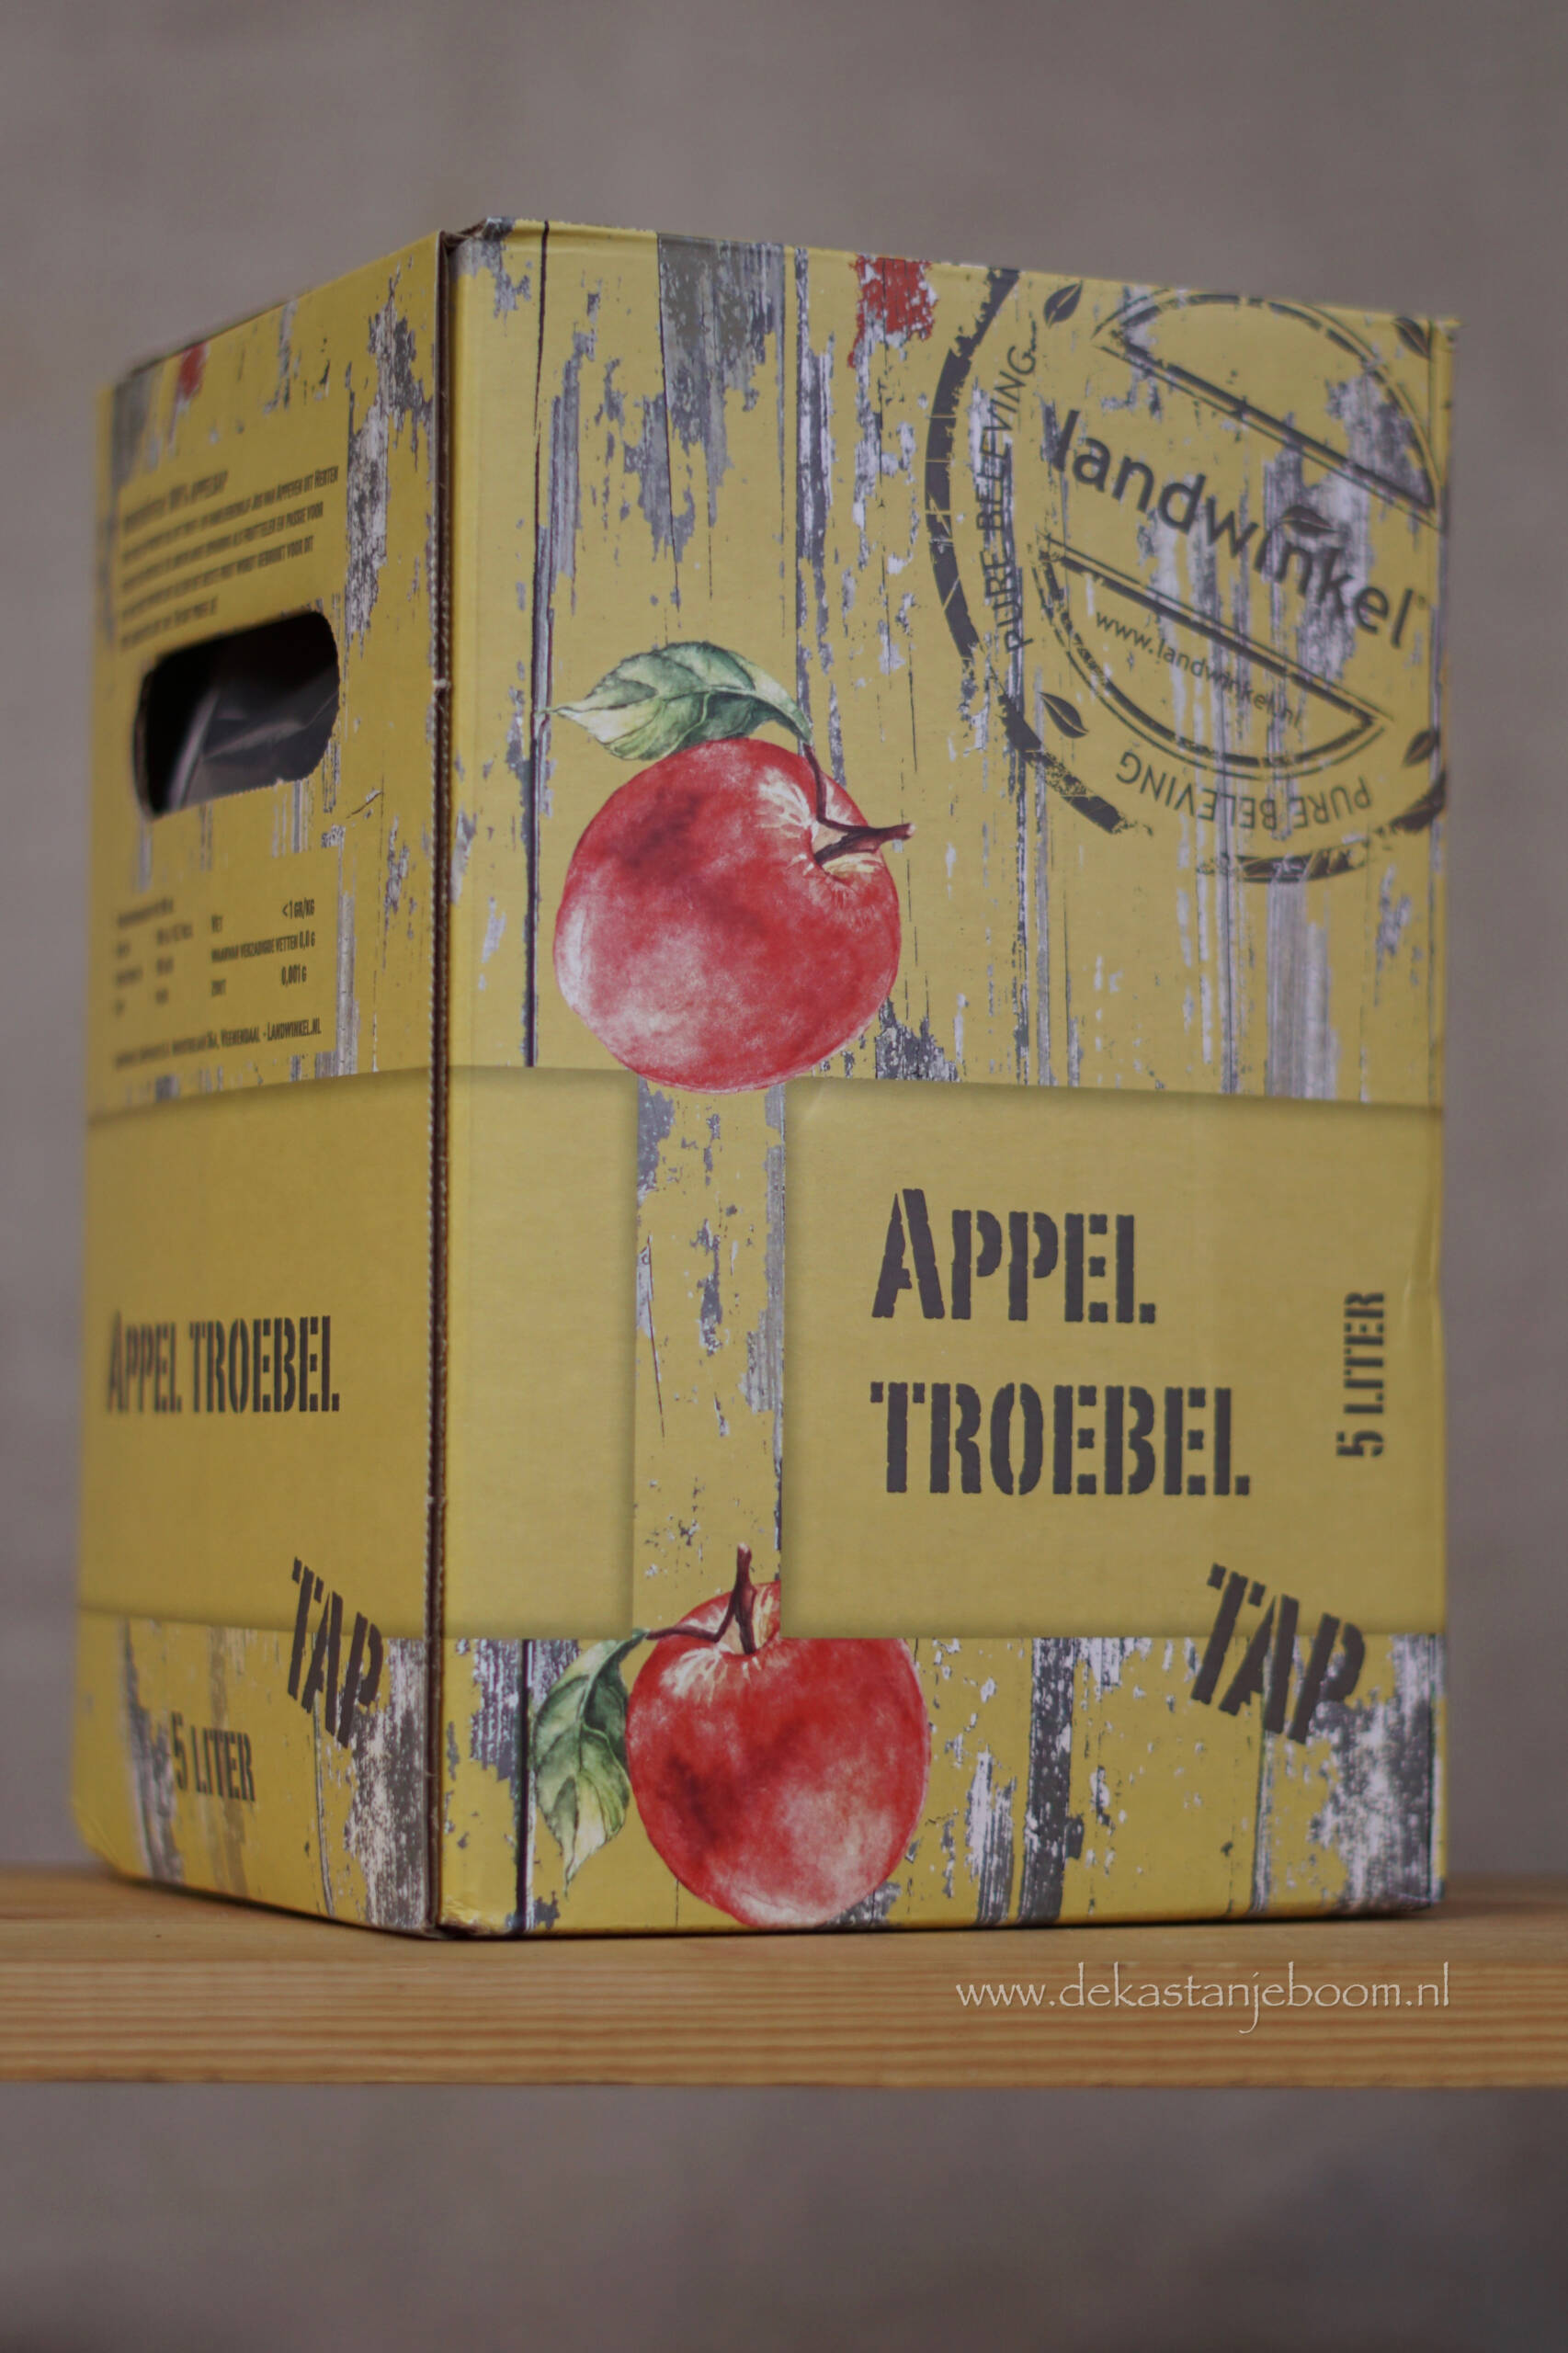 Appel troebel 5 liter